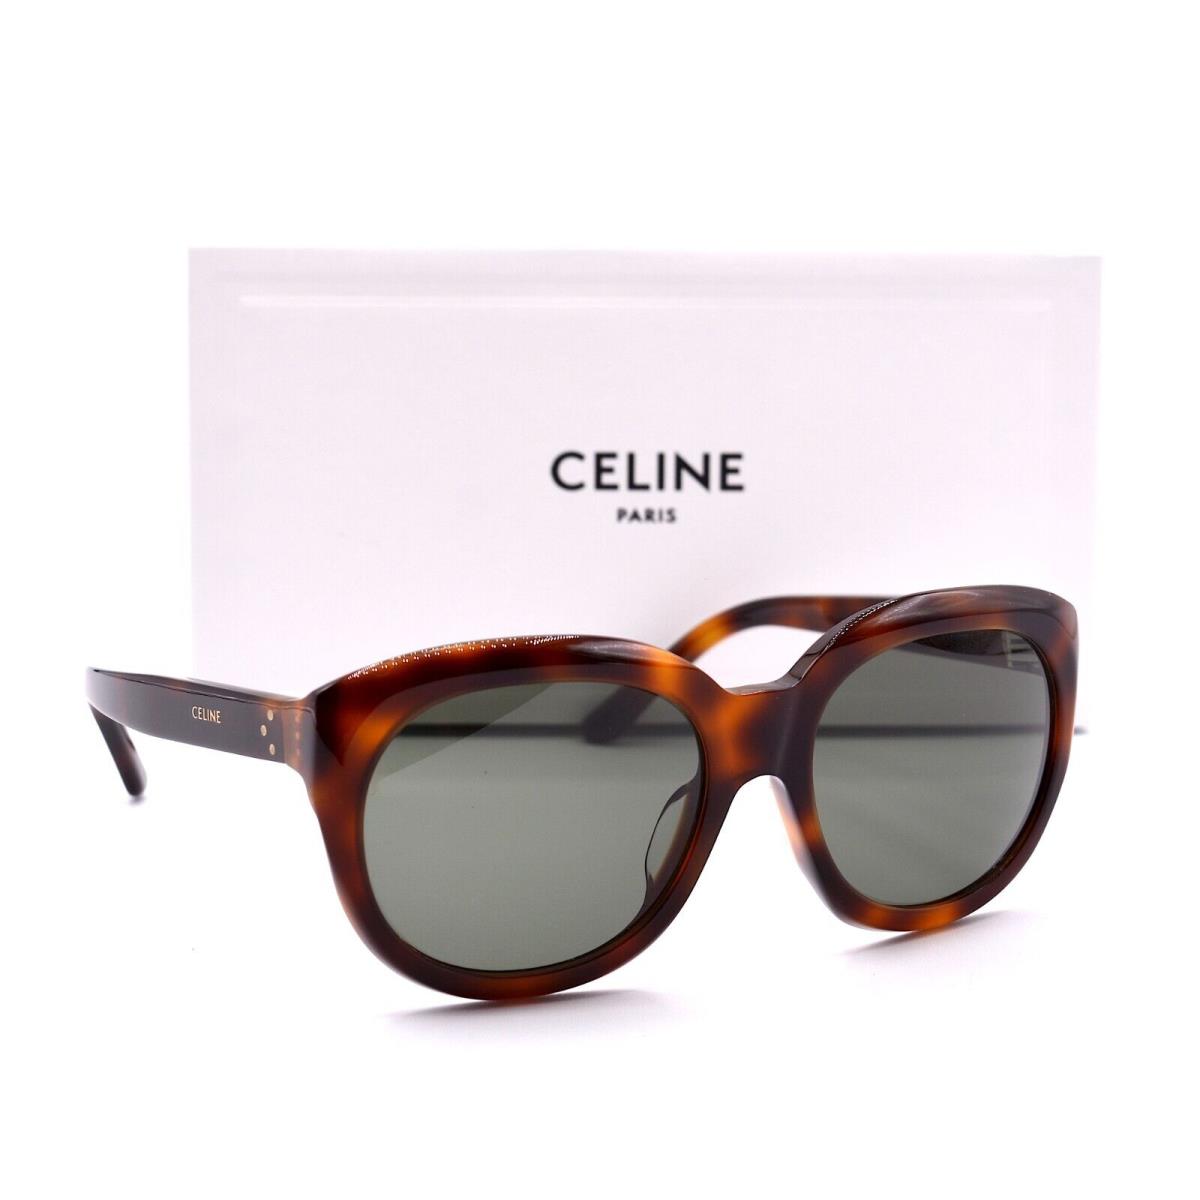 Celine sunglasses  - HAVANA Frame, Gray Lens